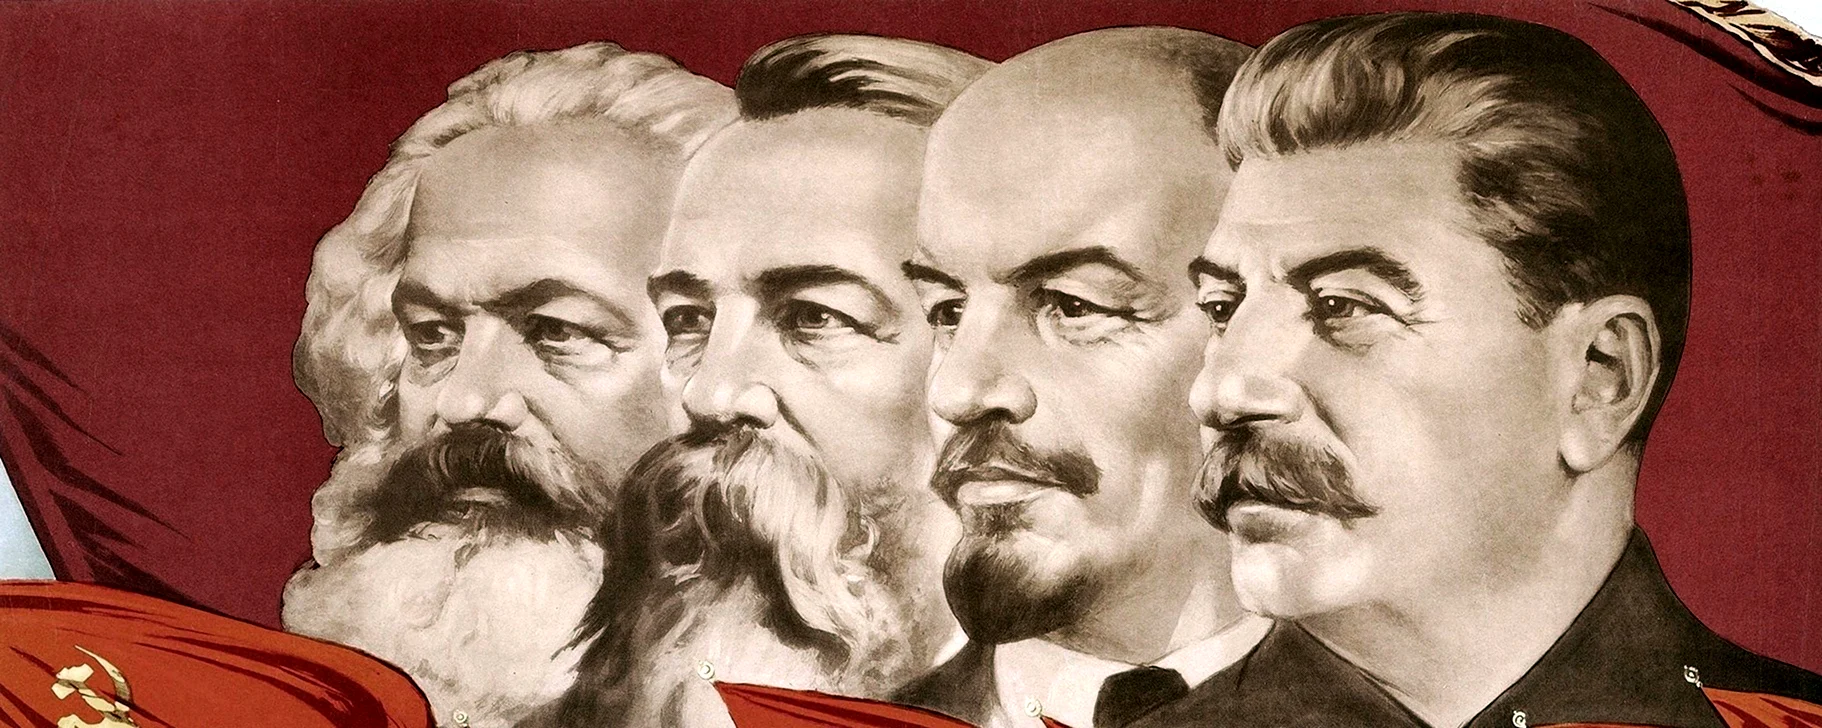 Маркс Энгельс Ленин Сталин Горбачев